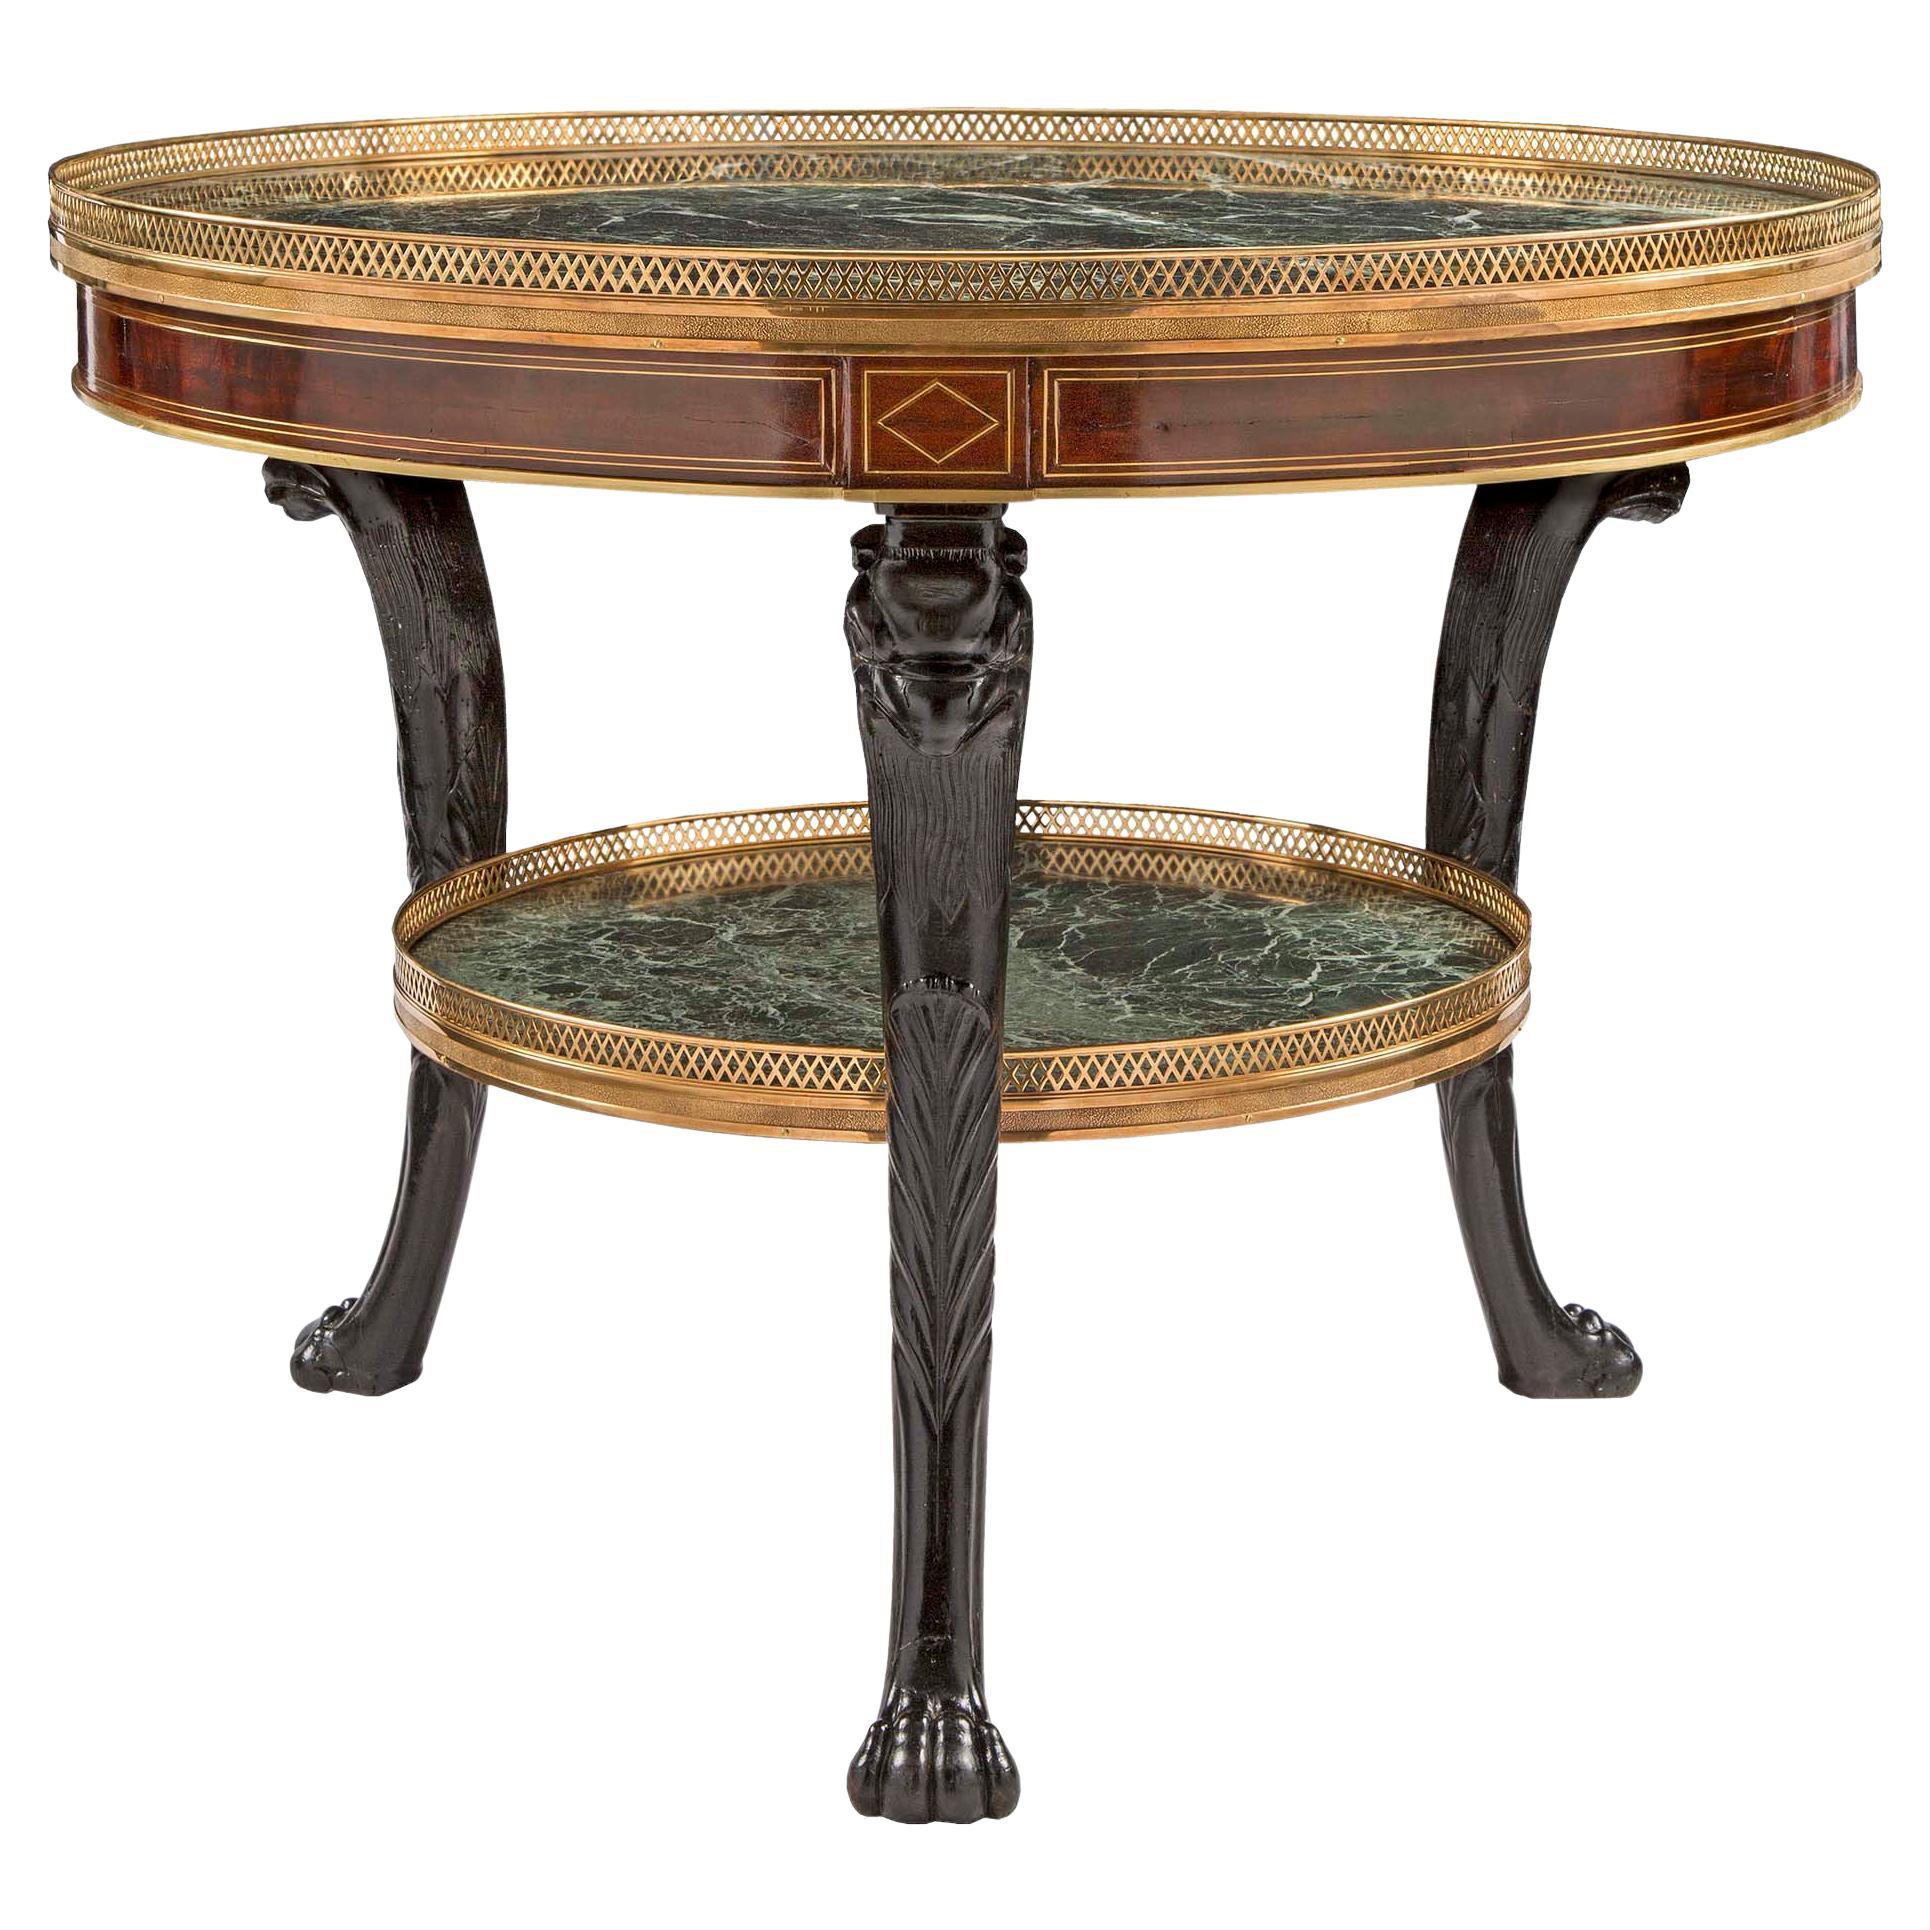 Table centrale en acajou, marbre et bronze doré de style néo-classique français du 19e siècle